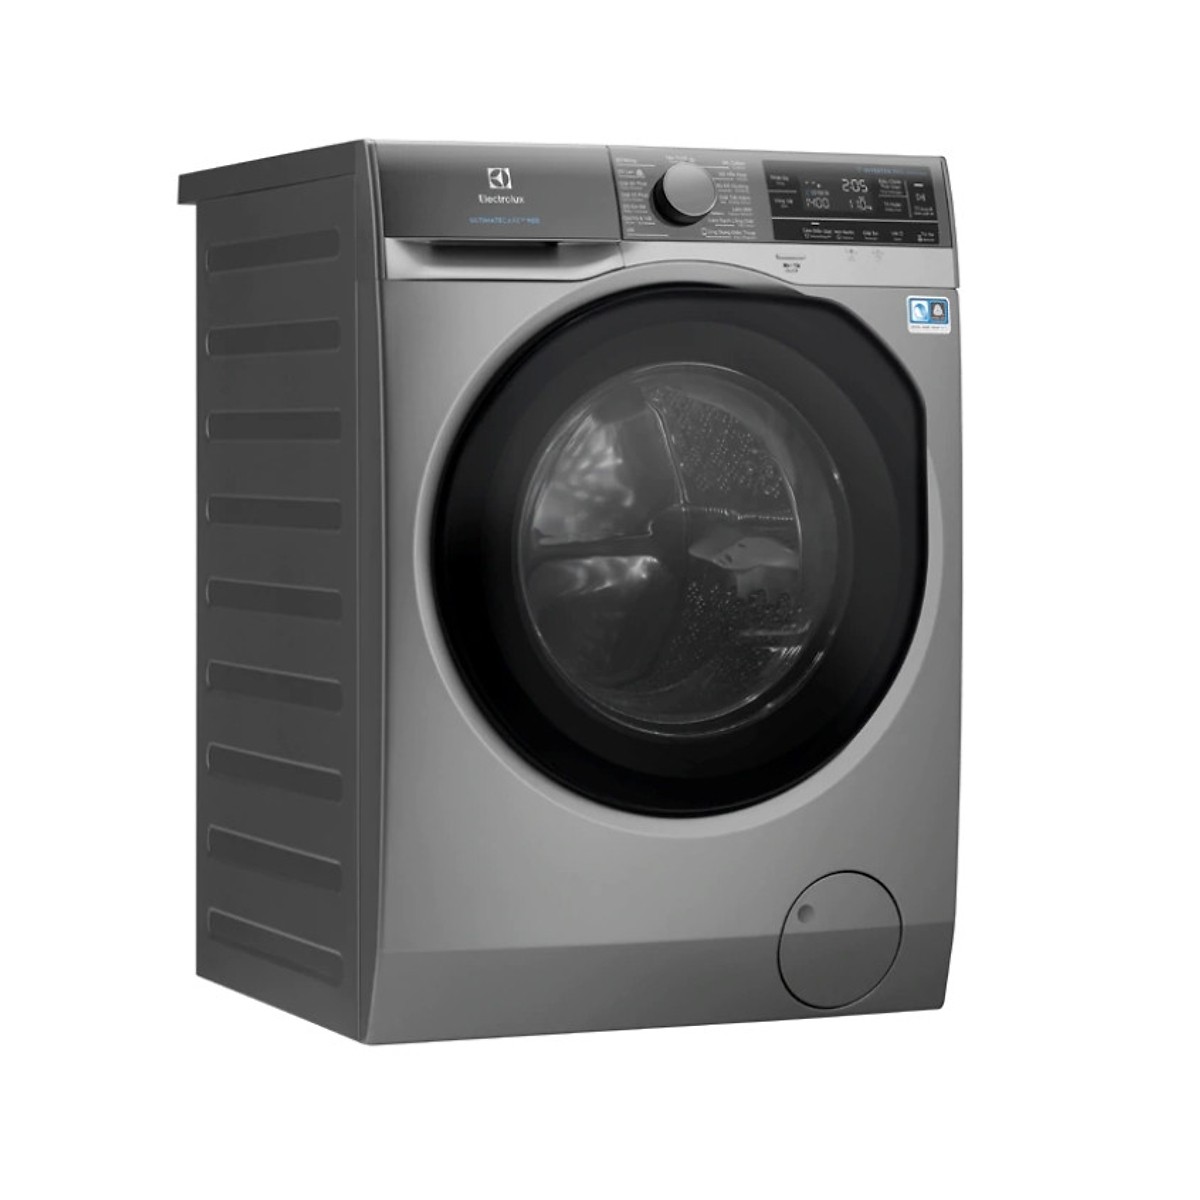 Máy giặt Electrolux EWF1142BESA 11kg - Hàng Chính Hãng + Tặng Bình Đun Siêu Tốc